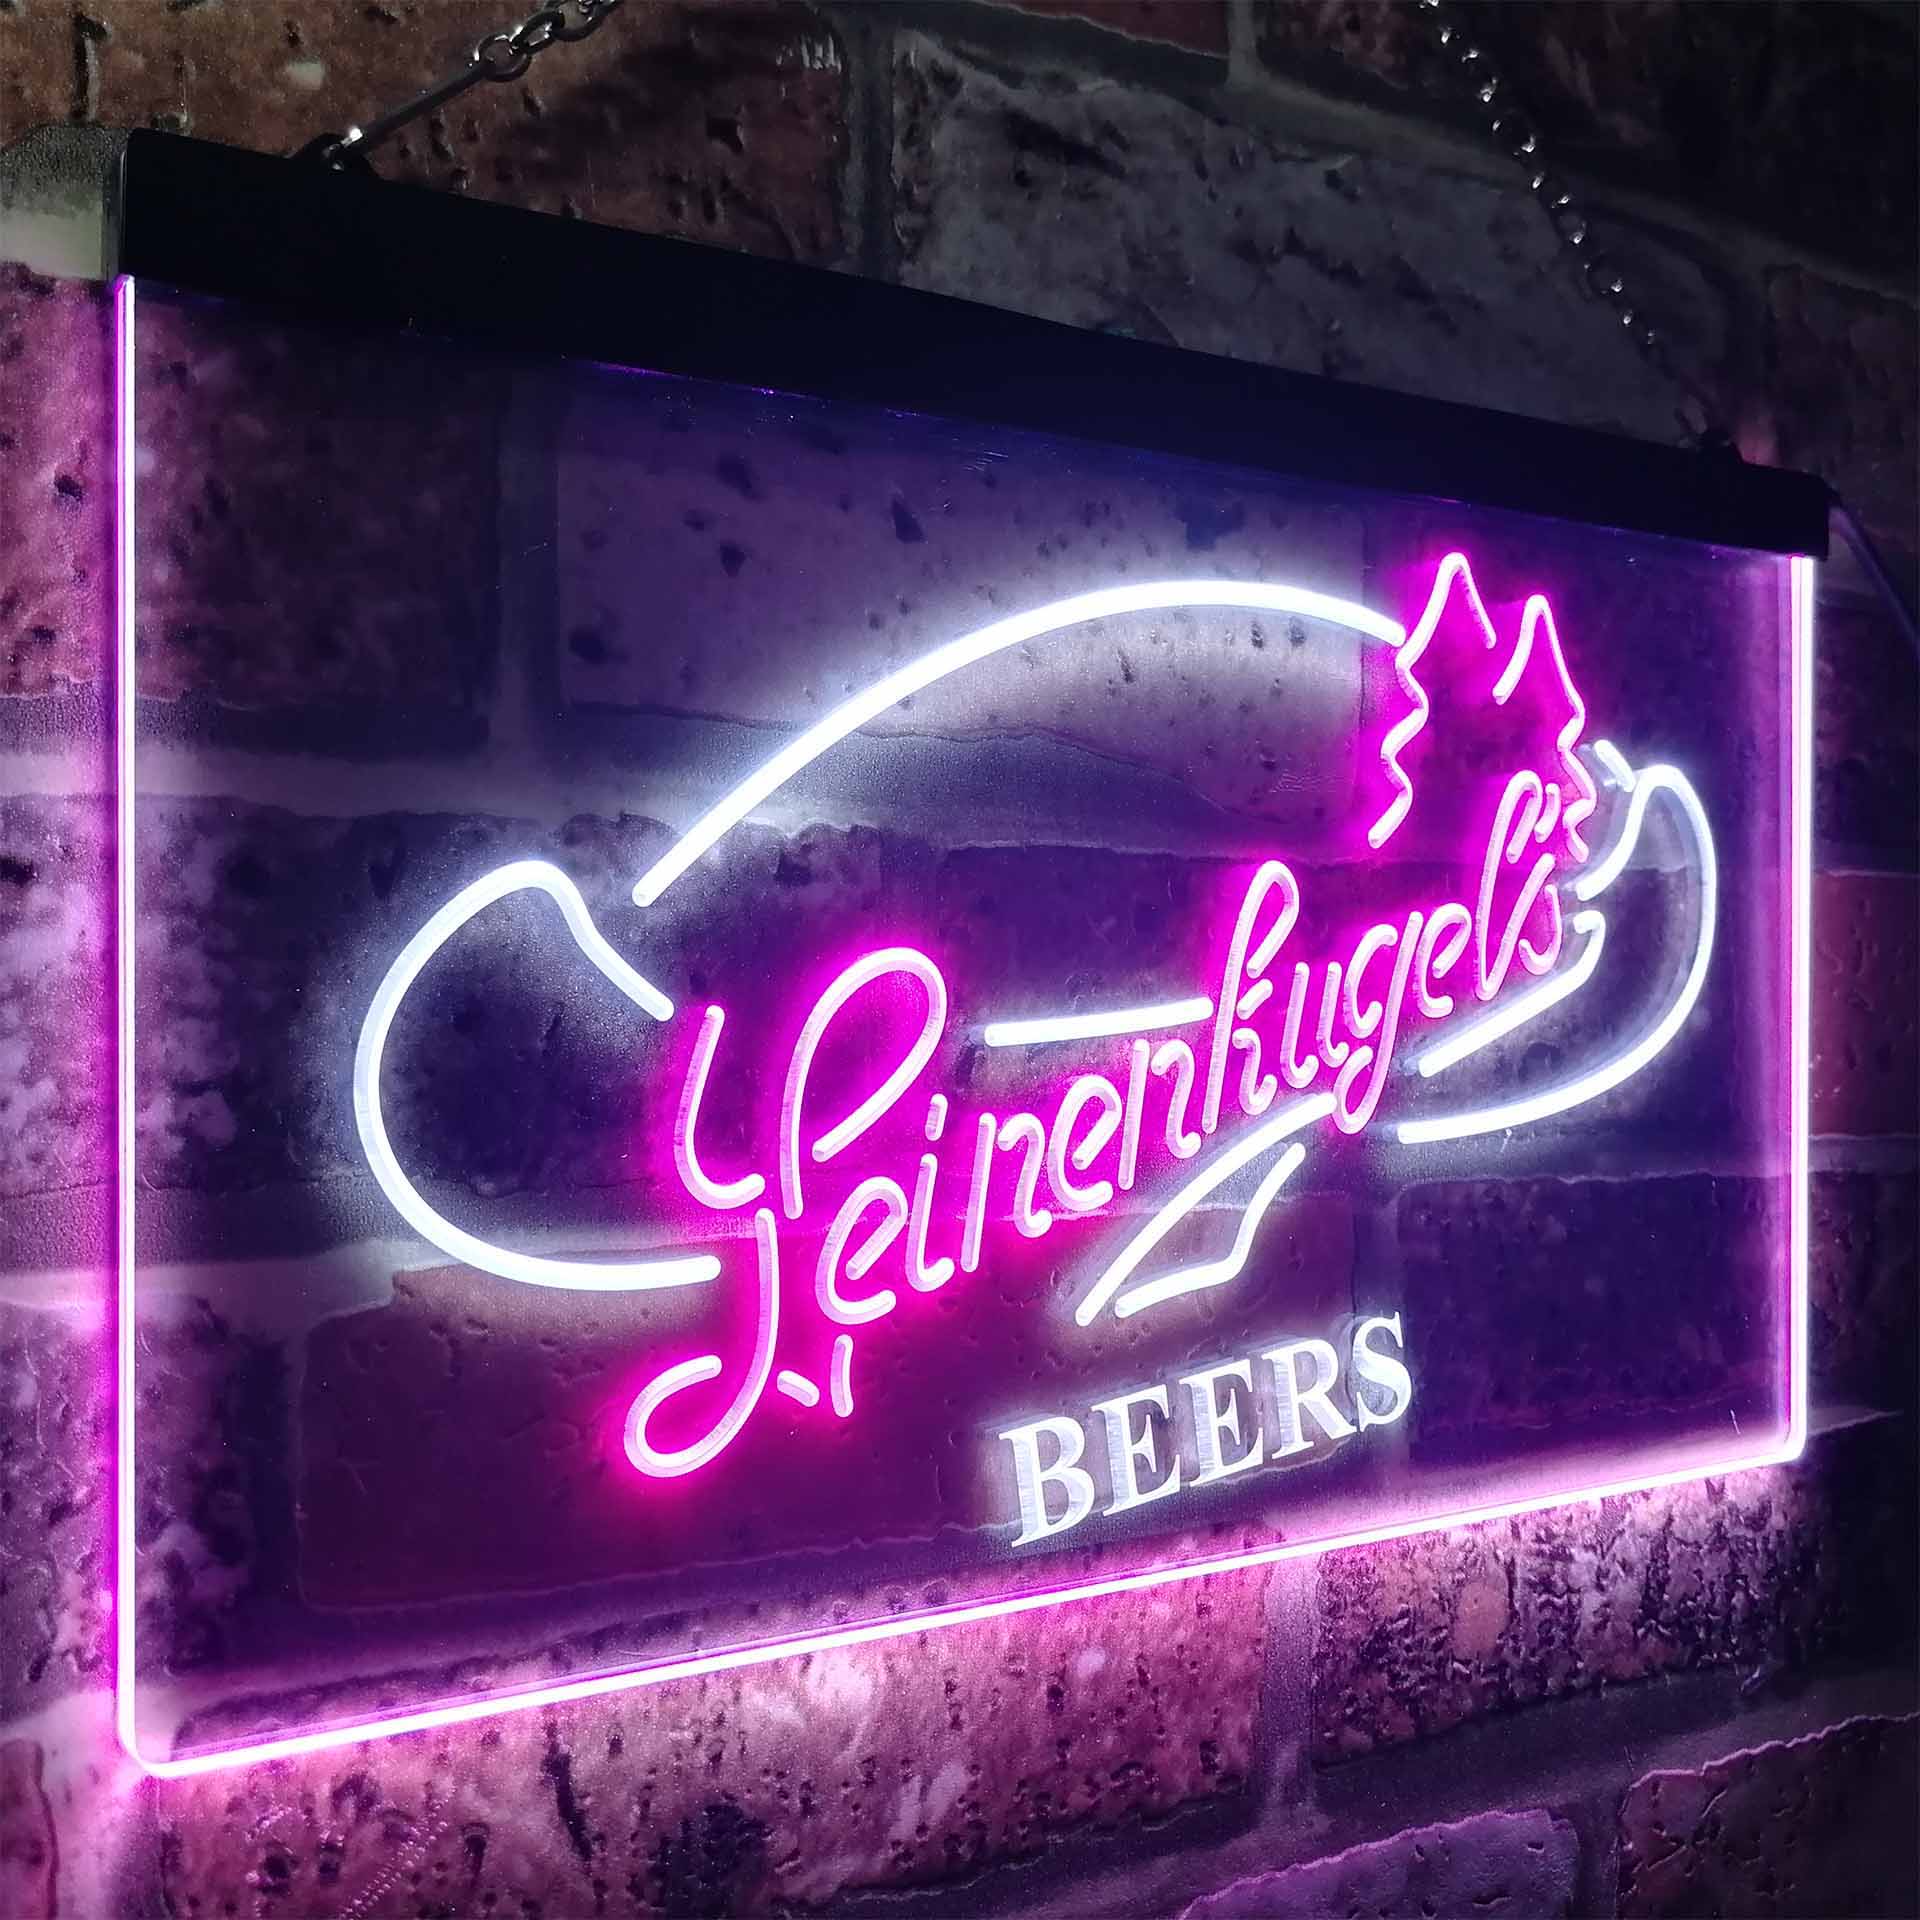 Leinenkugel's Beers Wisconsin Neon LED Sign